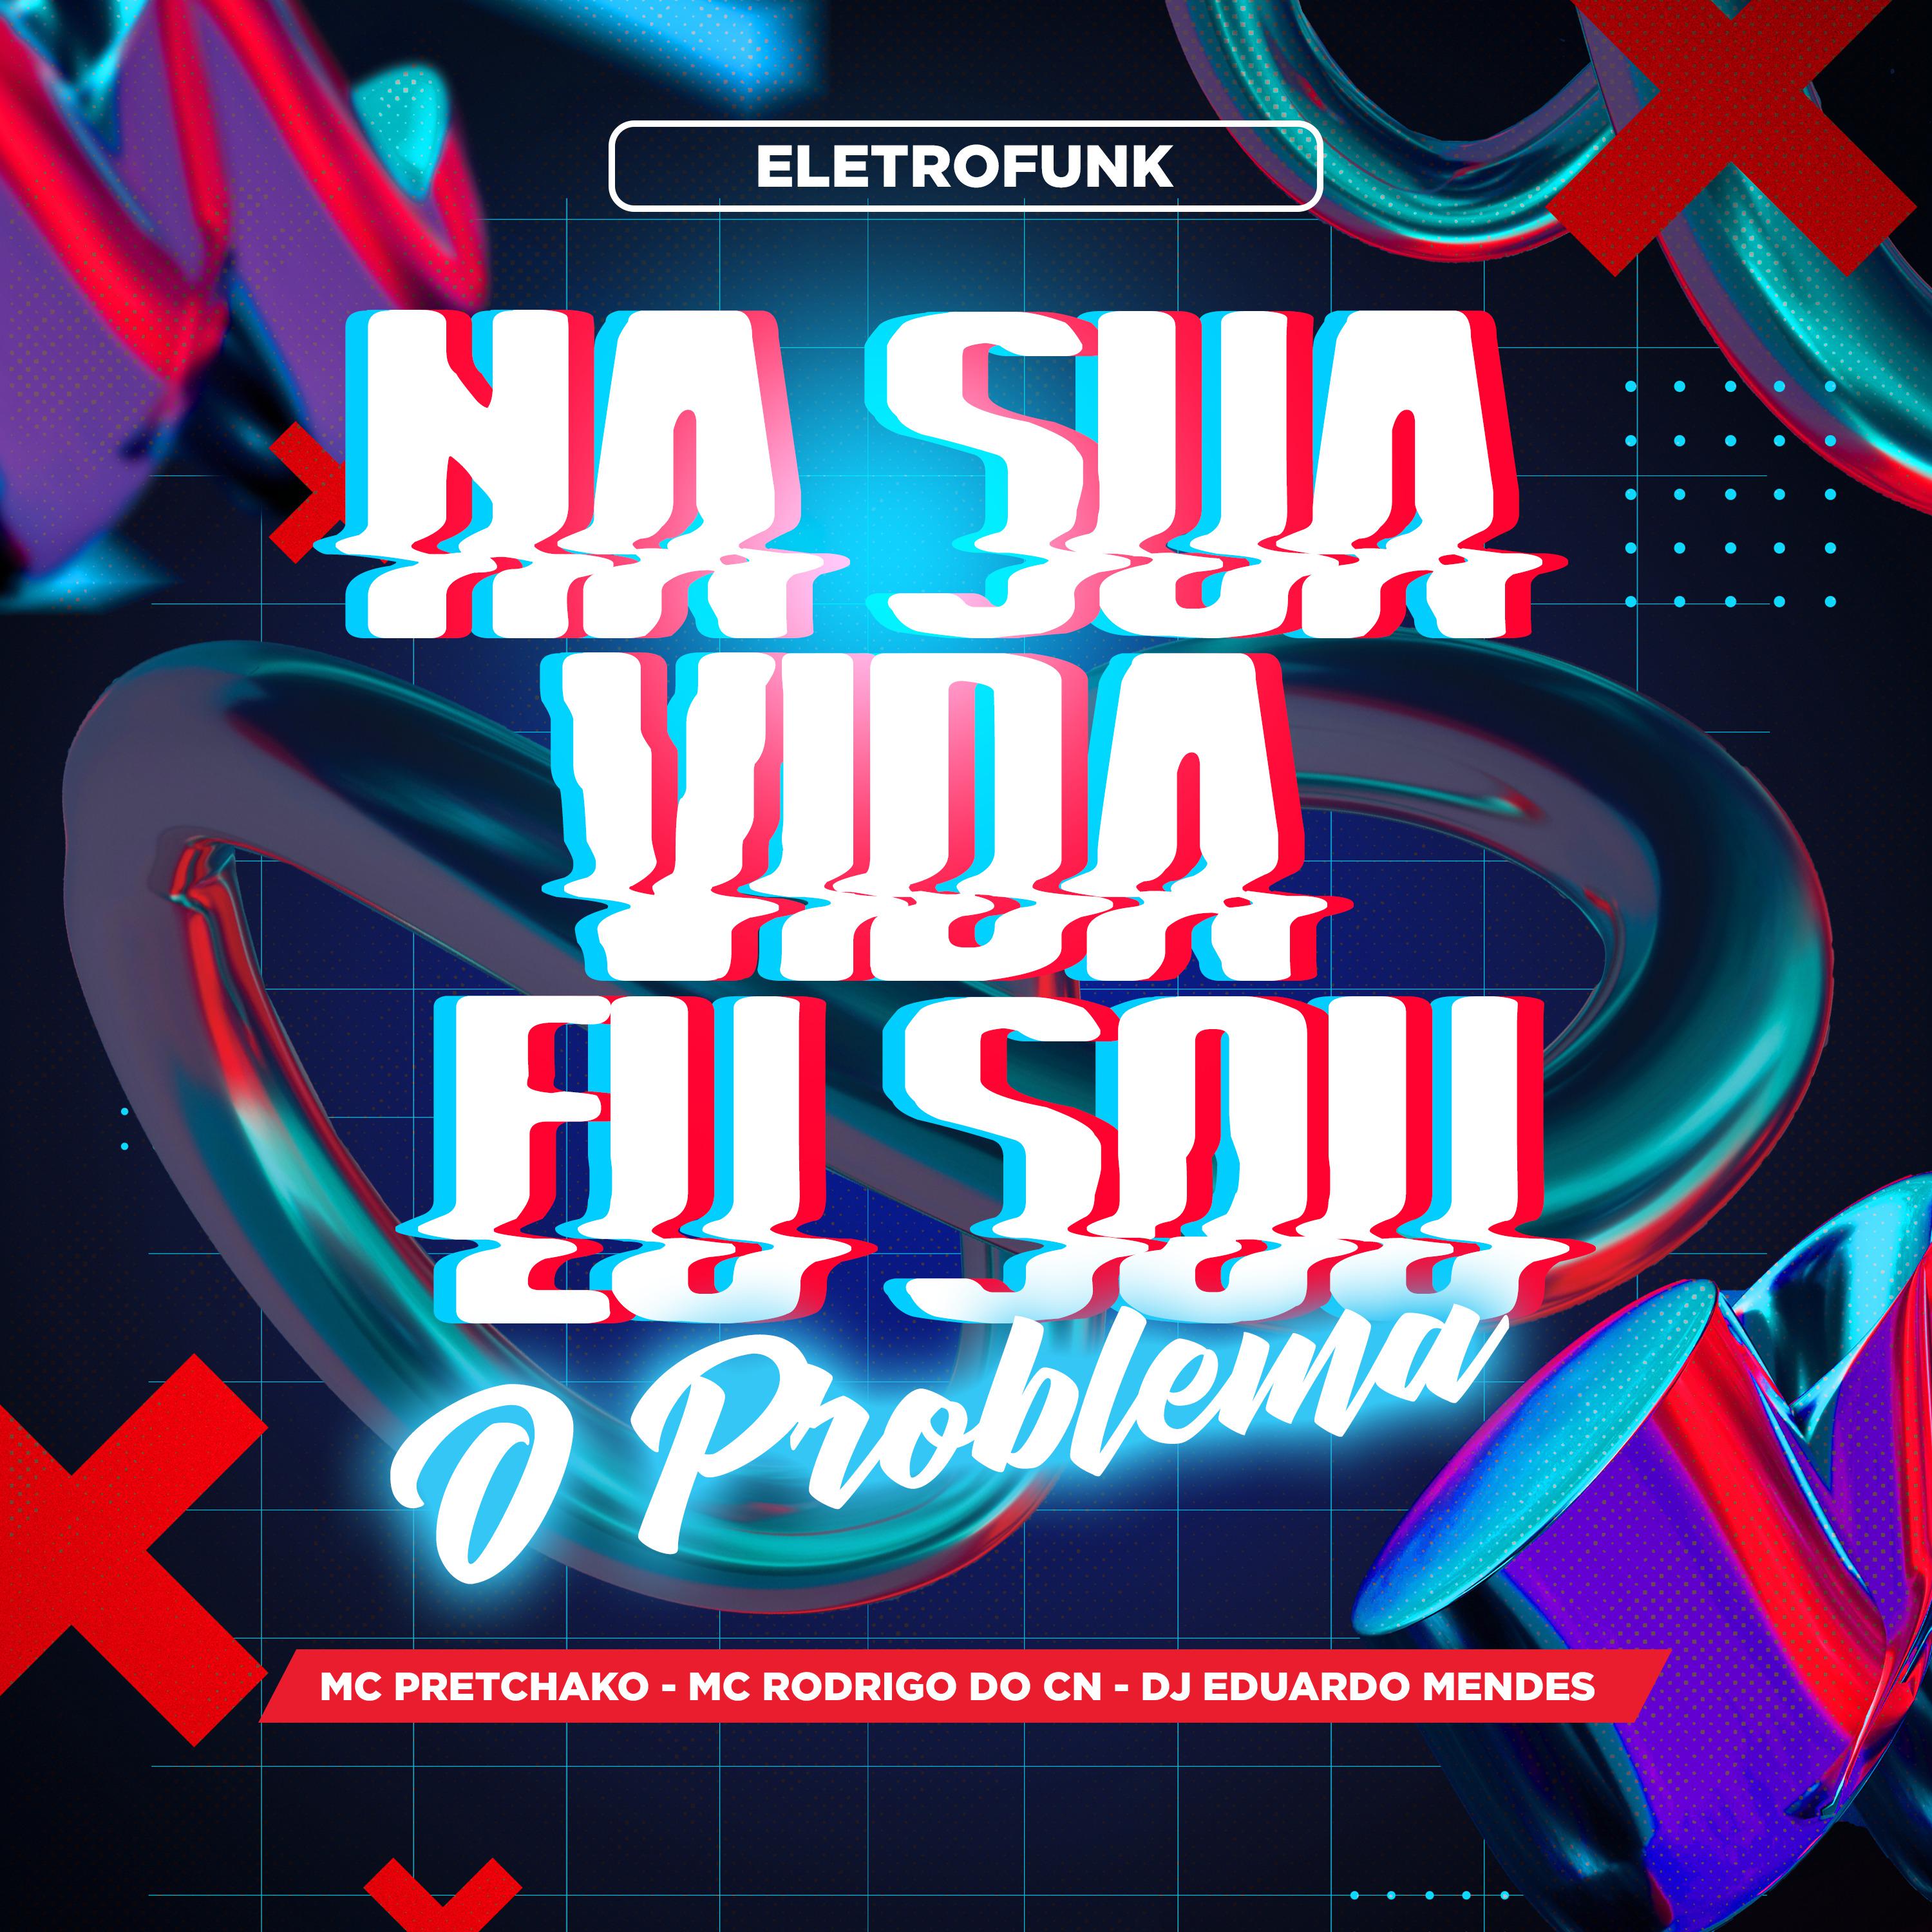 Постер альбома Na Sua Vida Eu Sou o Problema